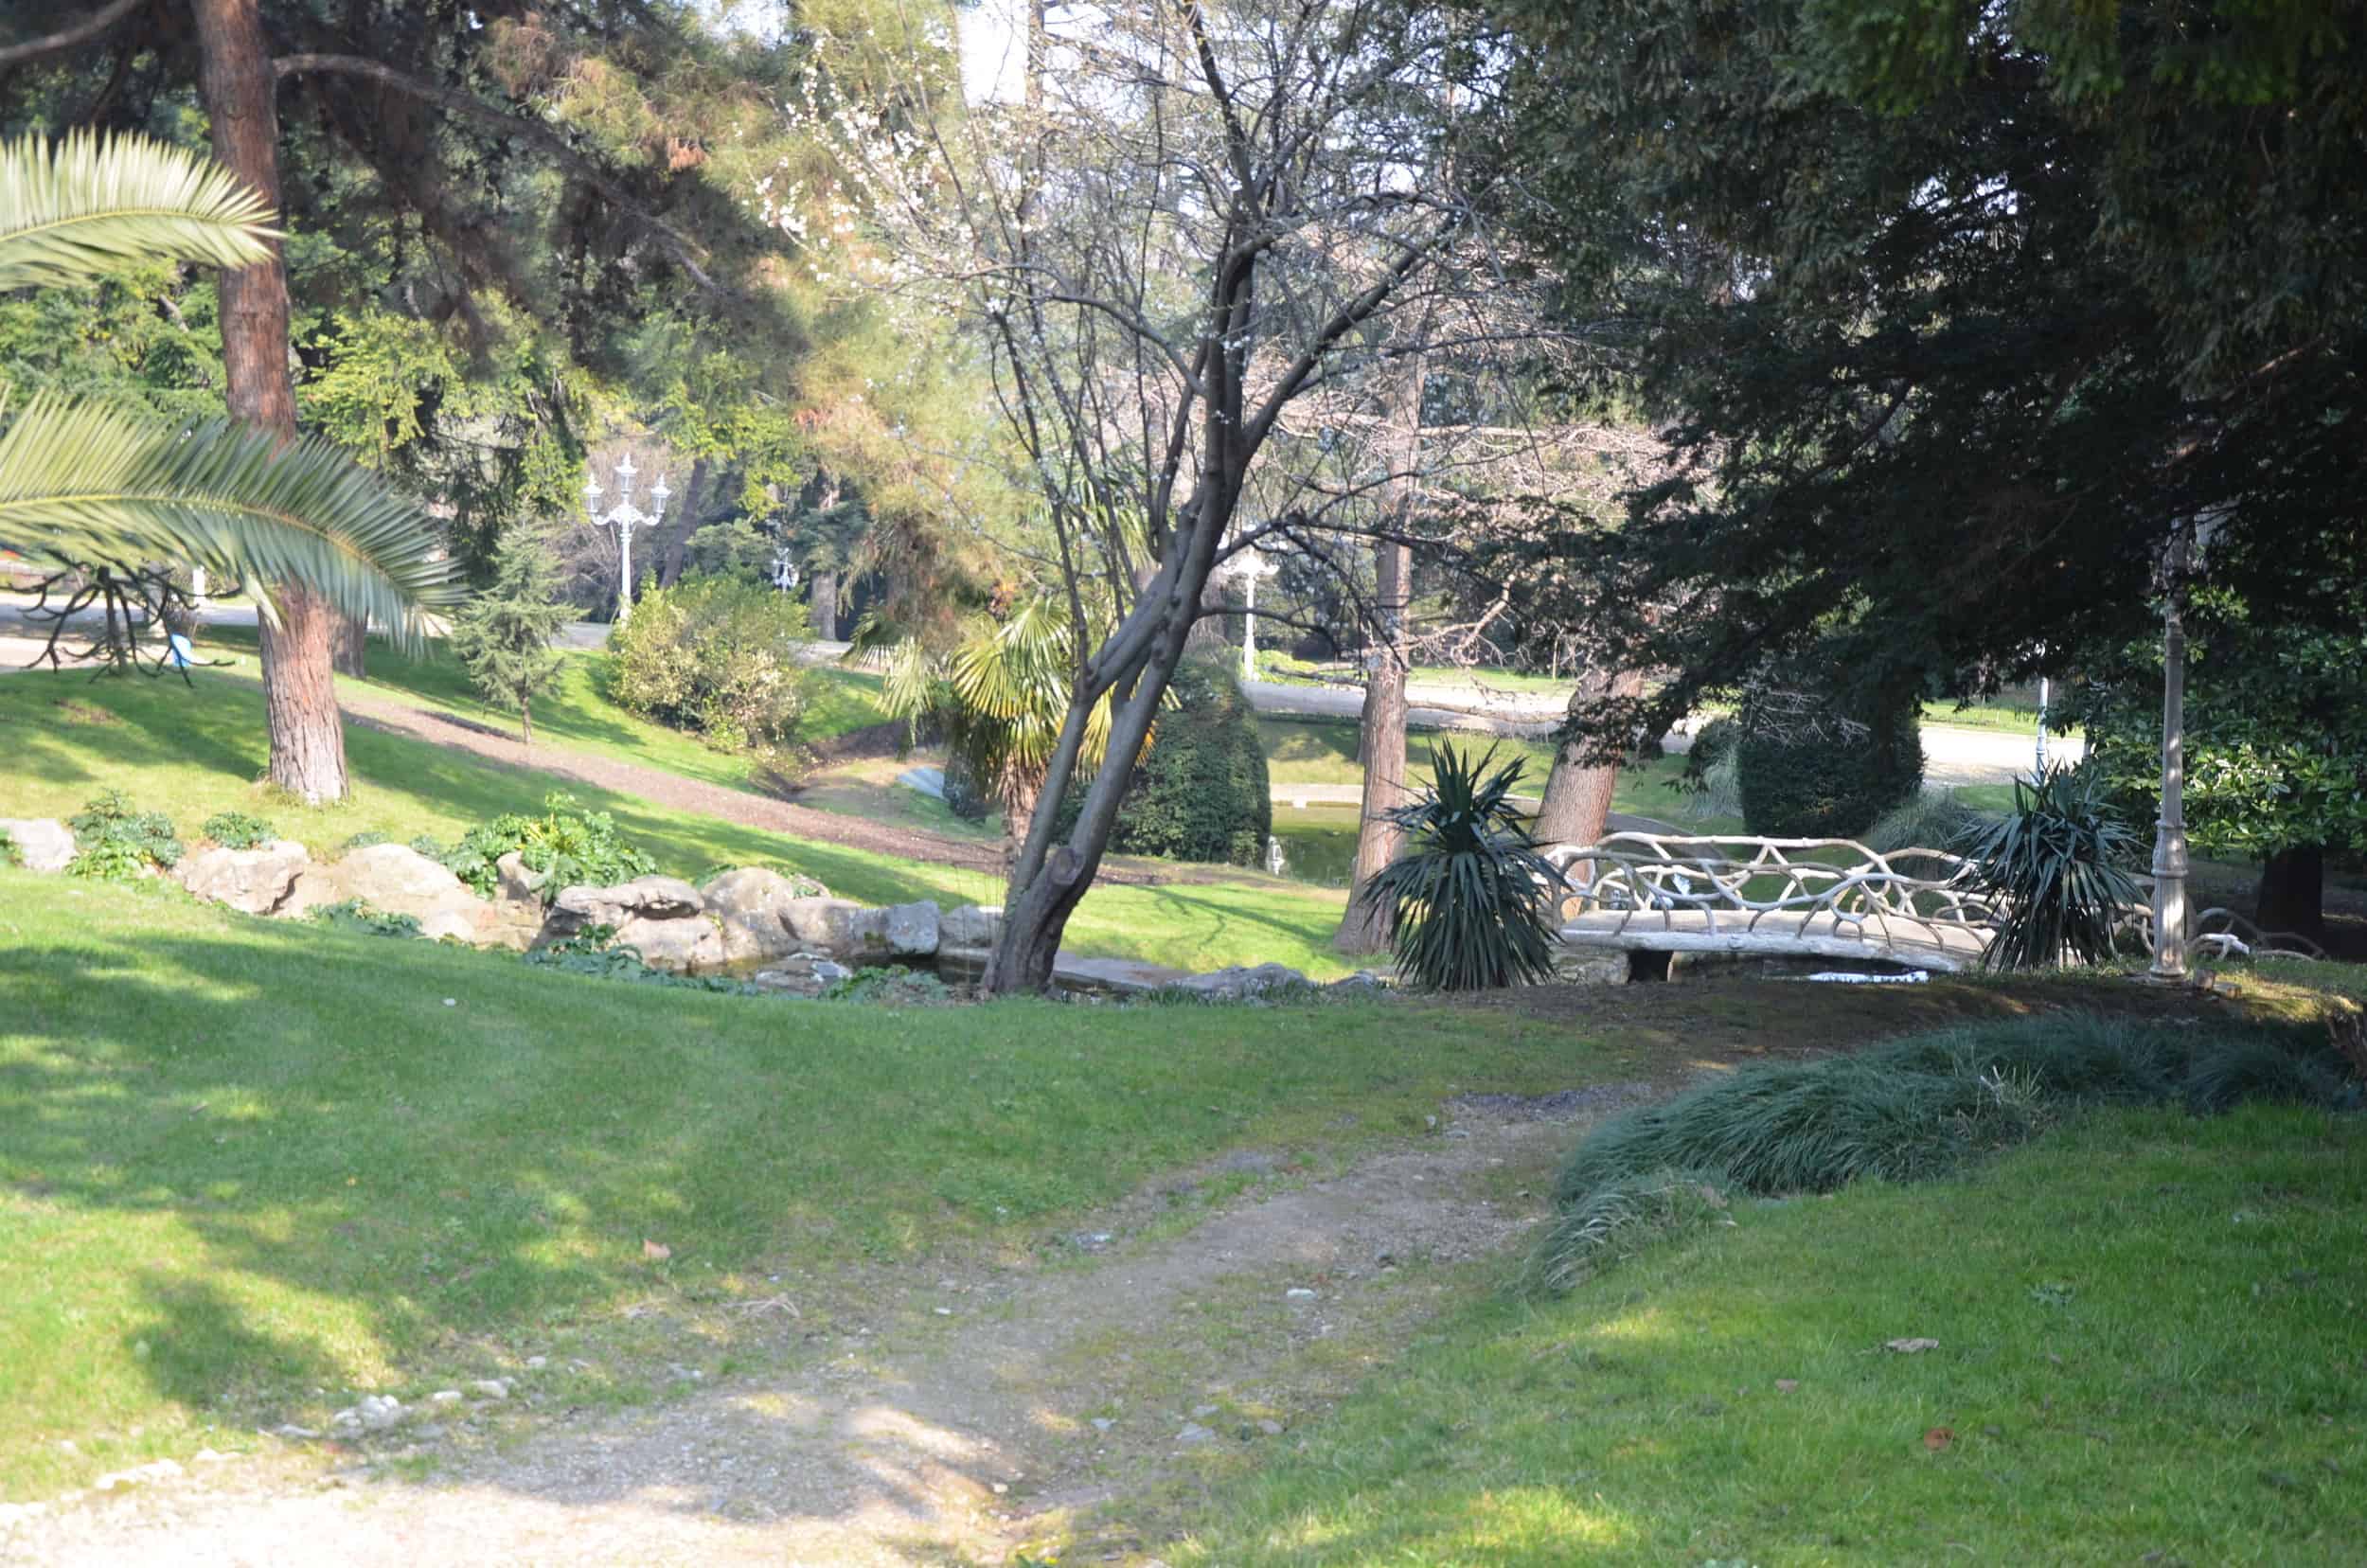 Garden at Yıldız Chalet at Yıldız Palace in Istanbul, Turkey